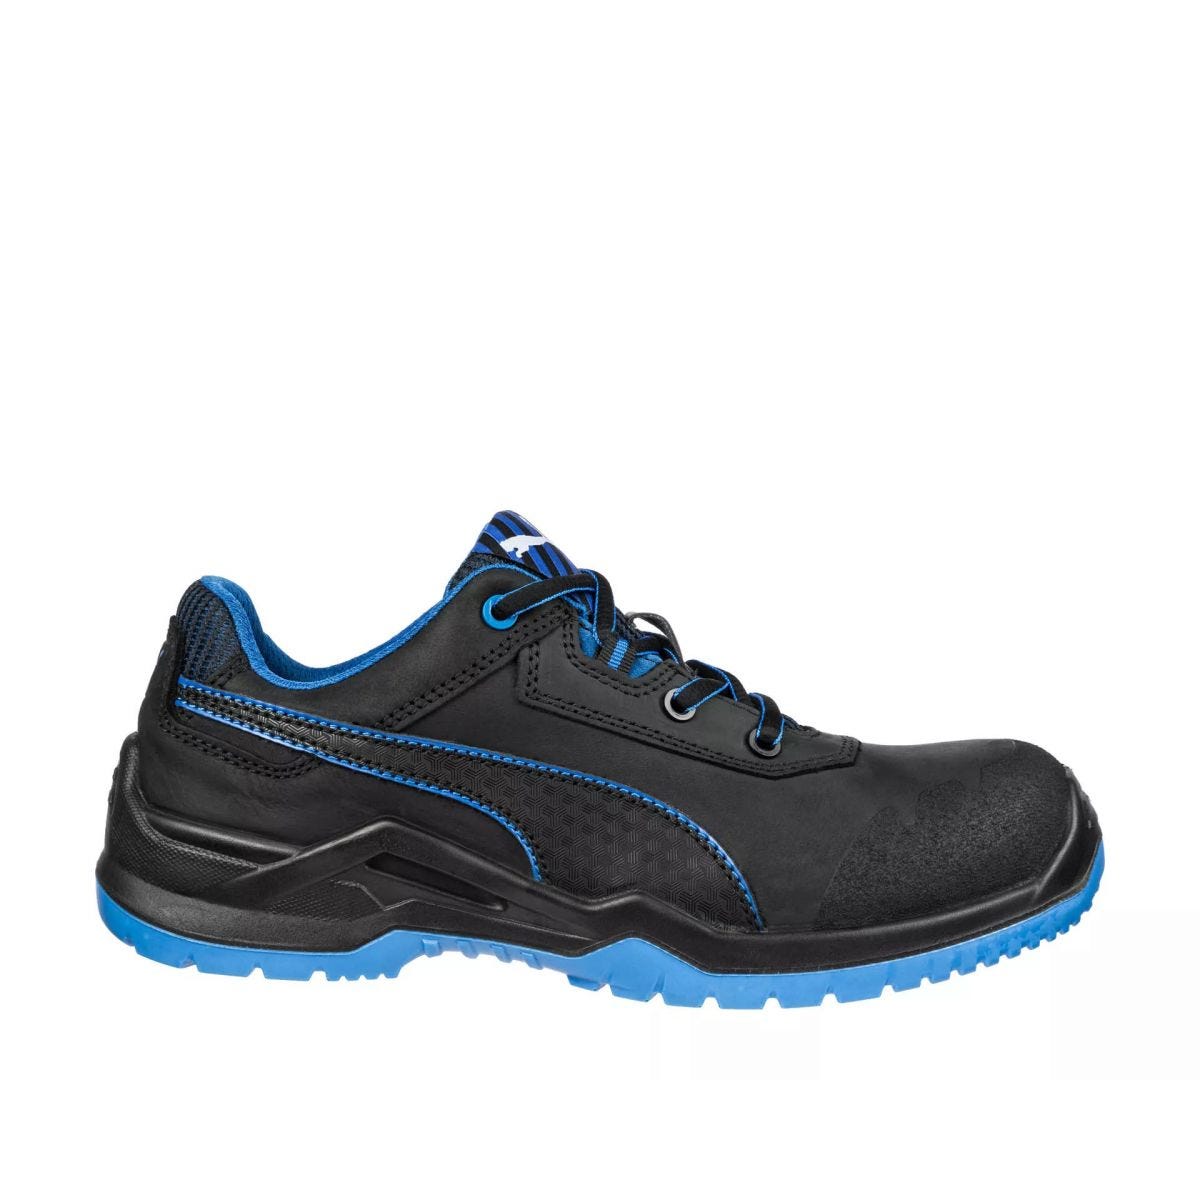 Chaussures de sécurité Argon RX low S3 ESD SRC bleu - Puma - Taille 48 0